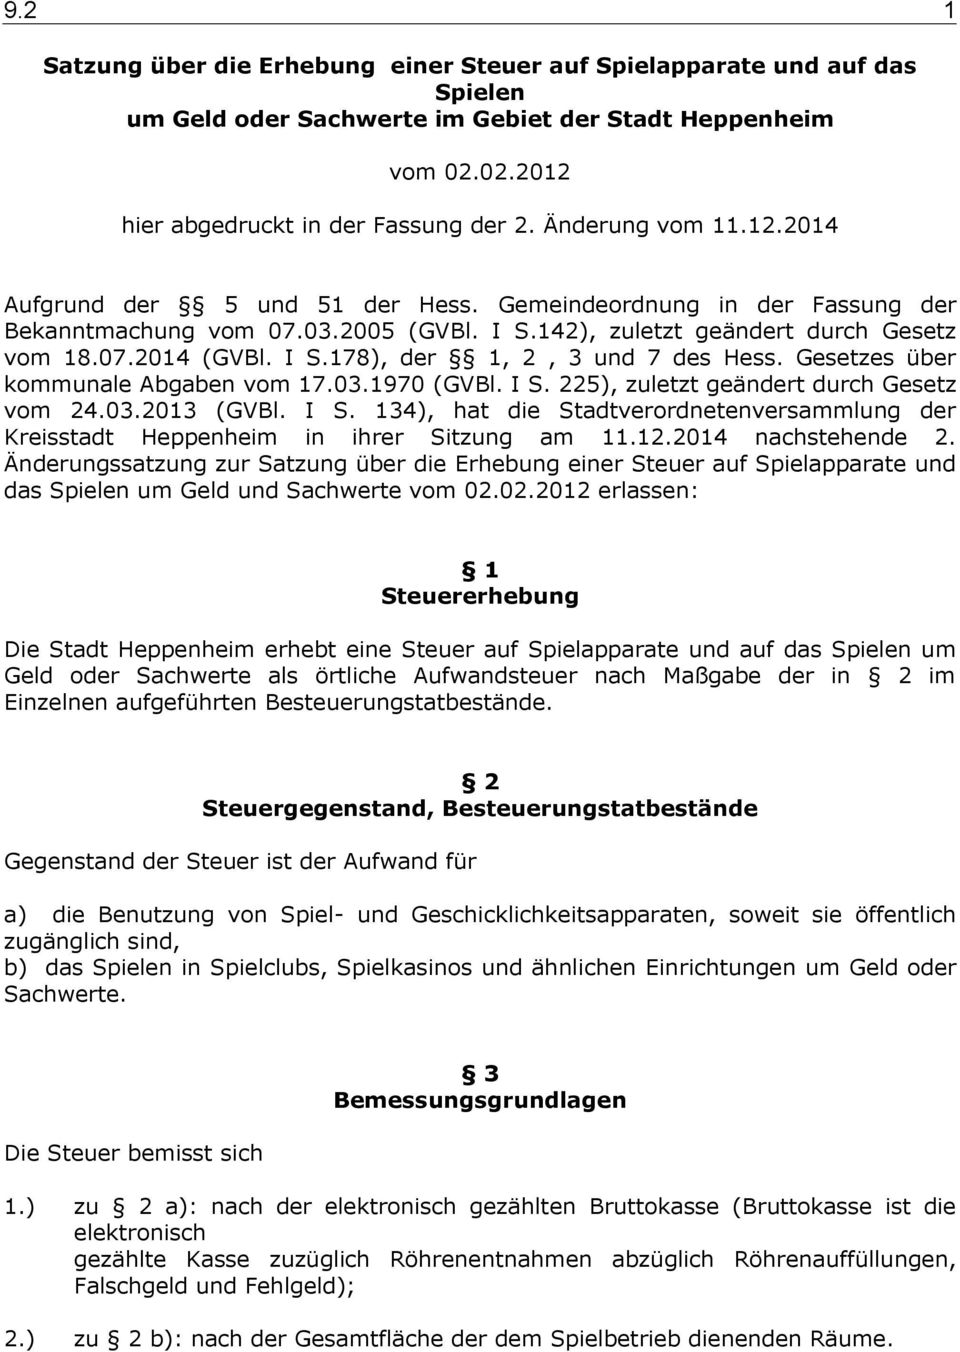 Gesetzes über kommunale Abgaben vom 17.03.1970 (GVBl. I S. 225), zuletzt geändert durch Gesetz vom 24.03.2013 (GVBl. I S. 134), hat die Stadtverordnetenversammlung der Kreisstadt Heppenheim in ihrer Sitzung am 11.